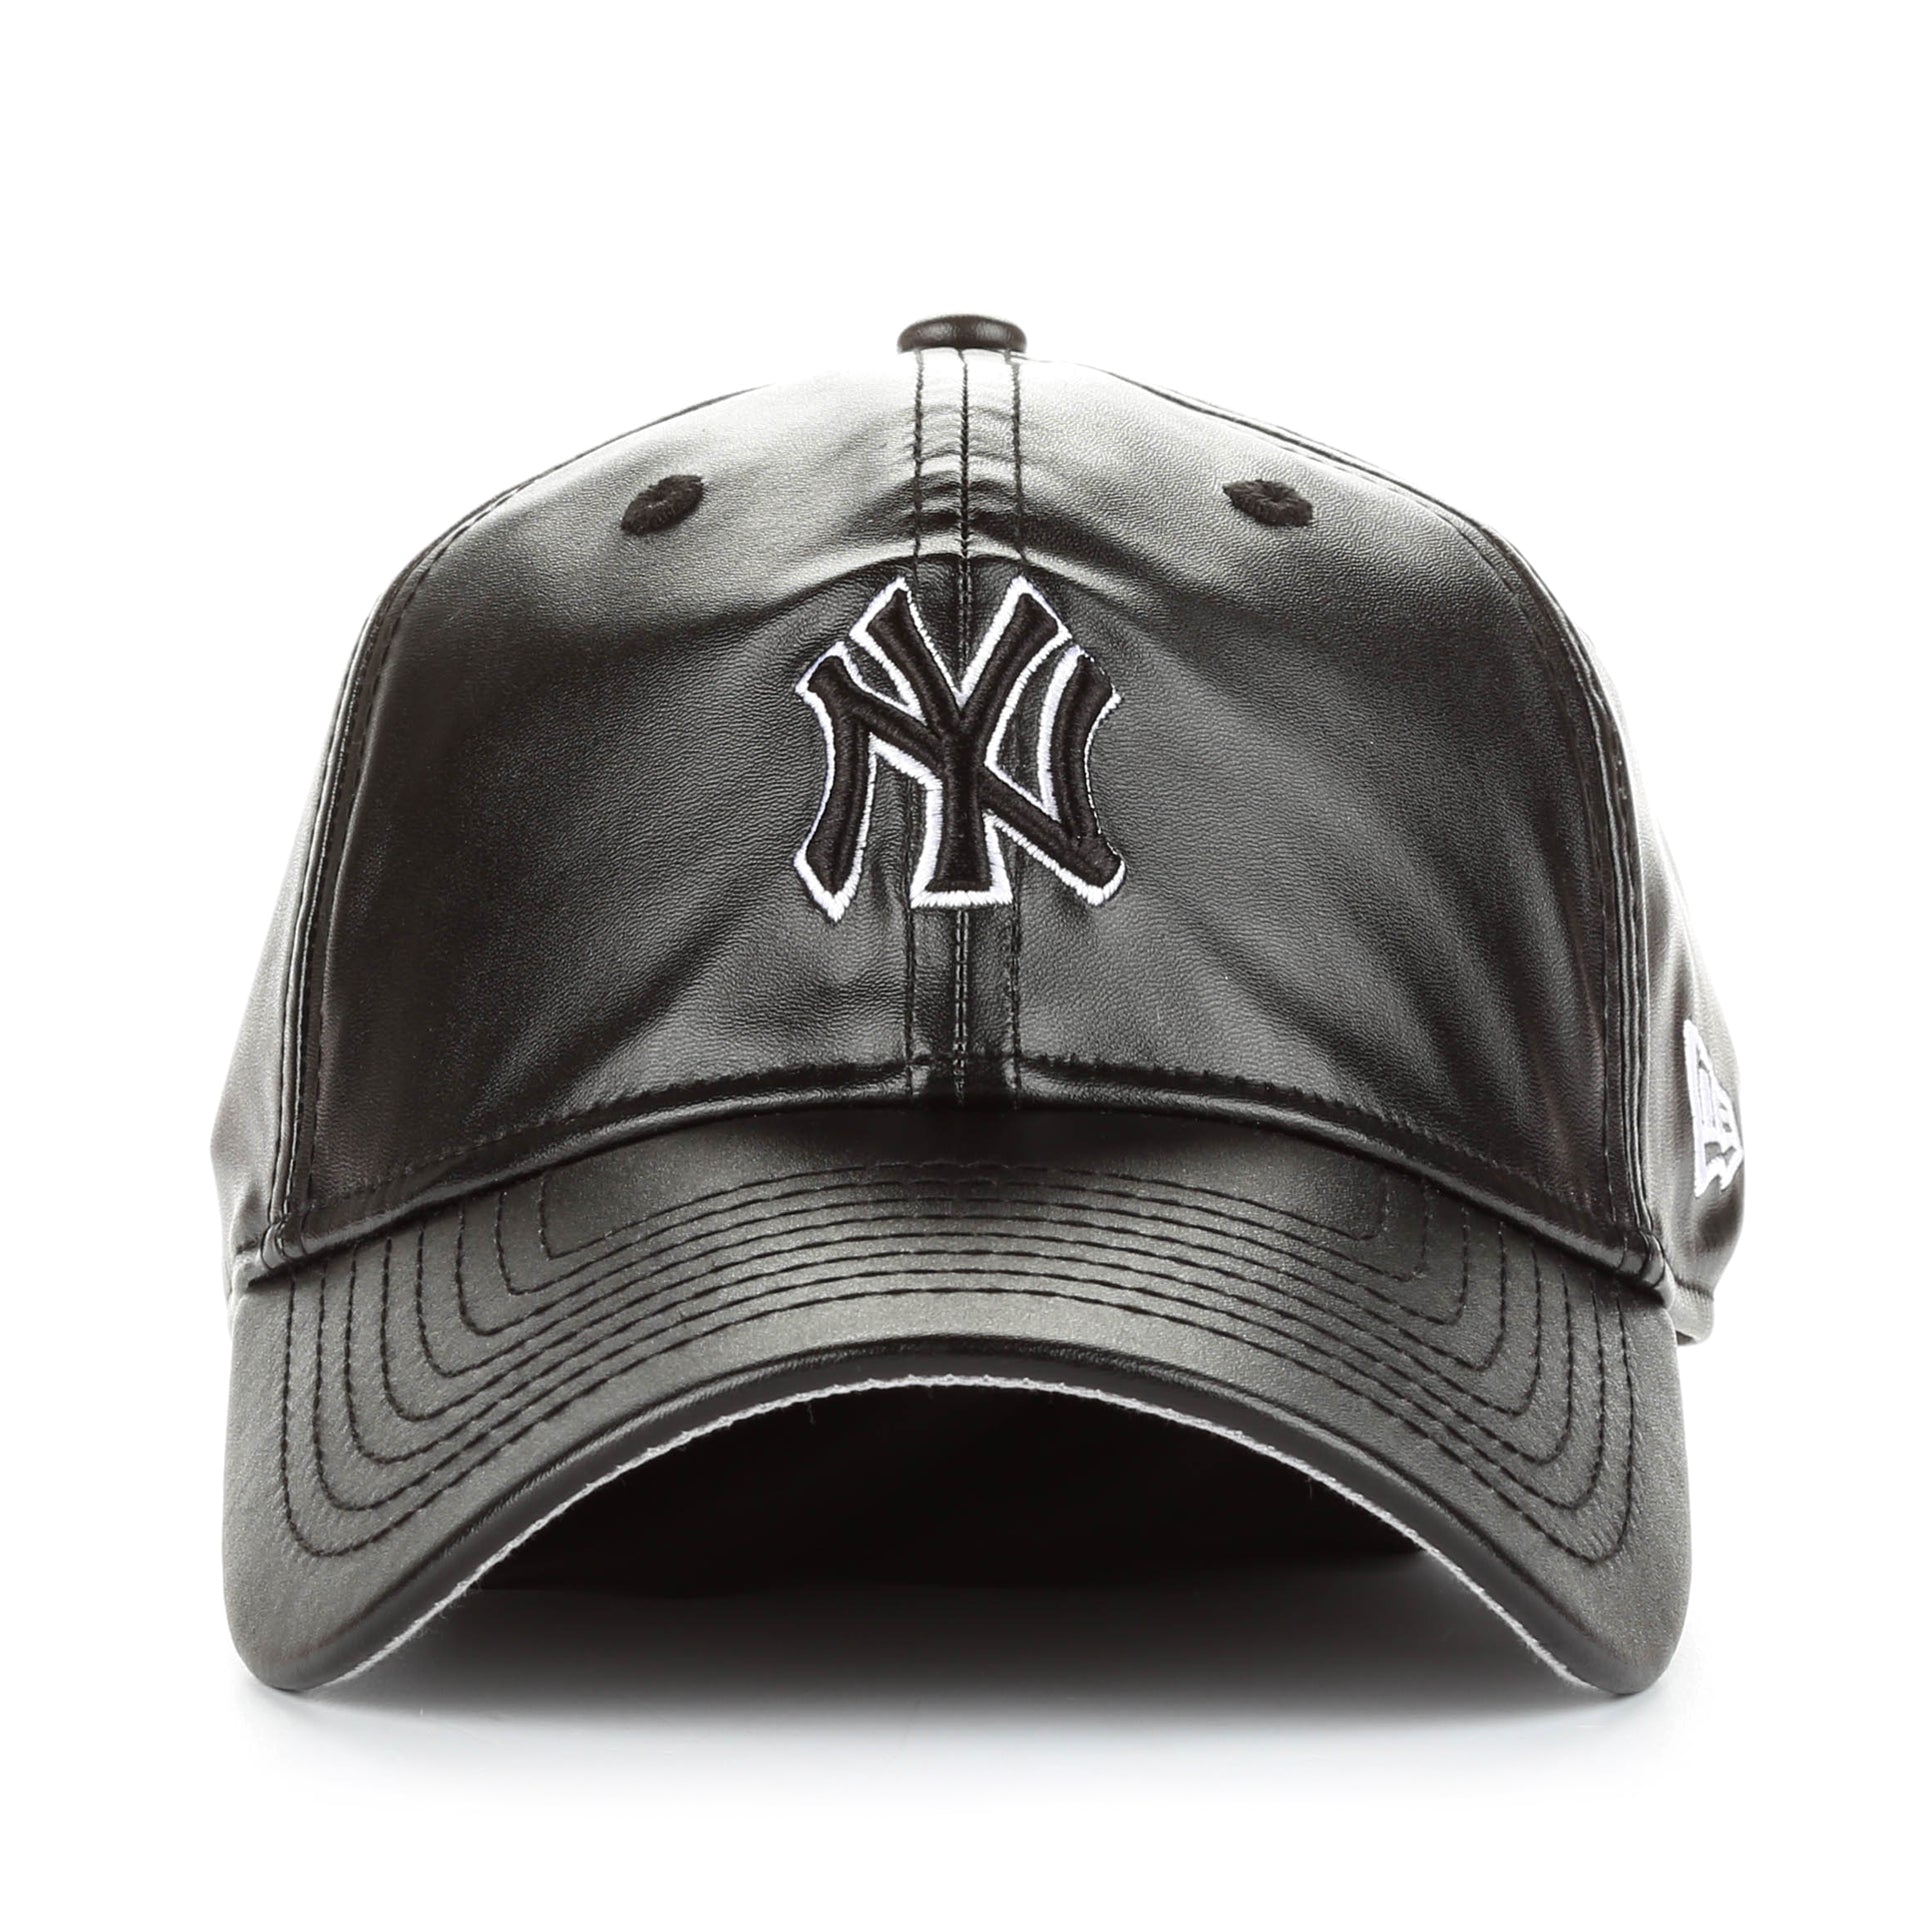 NY Black Yankees Cotton Hat - Navy